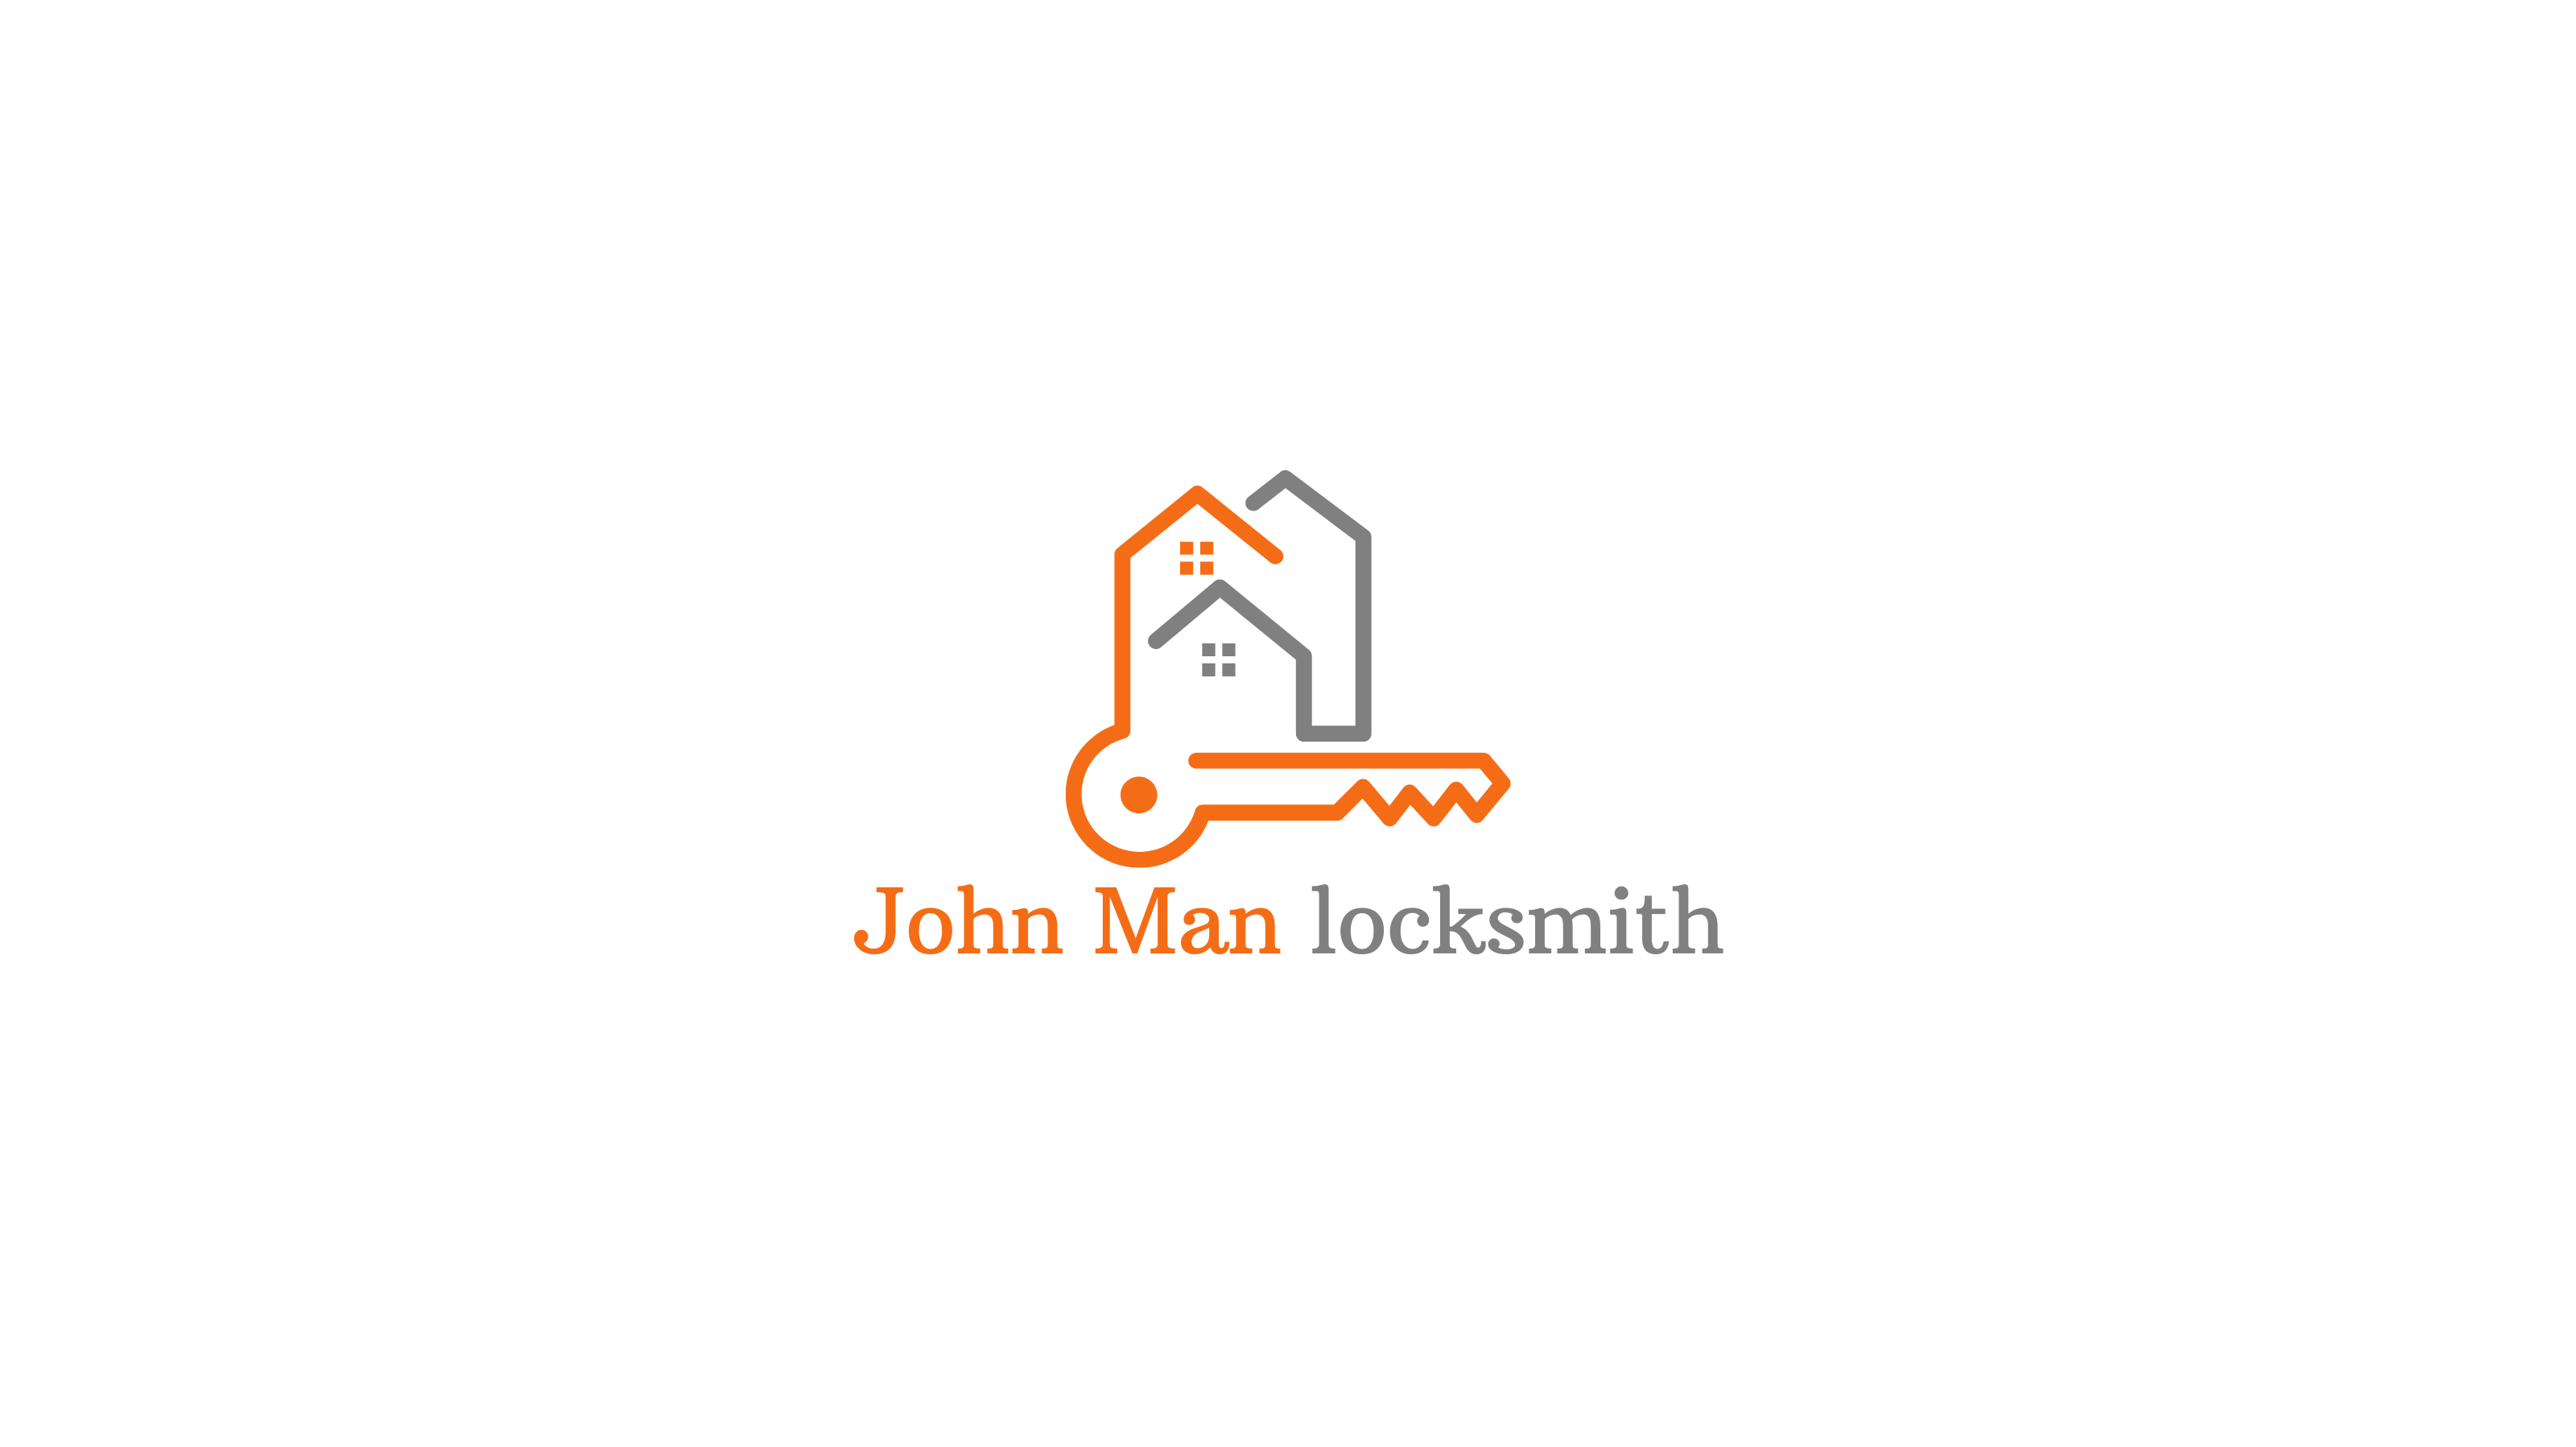 John Man locksmith